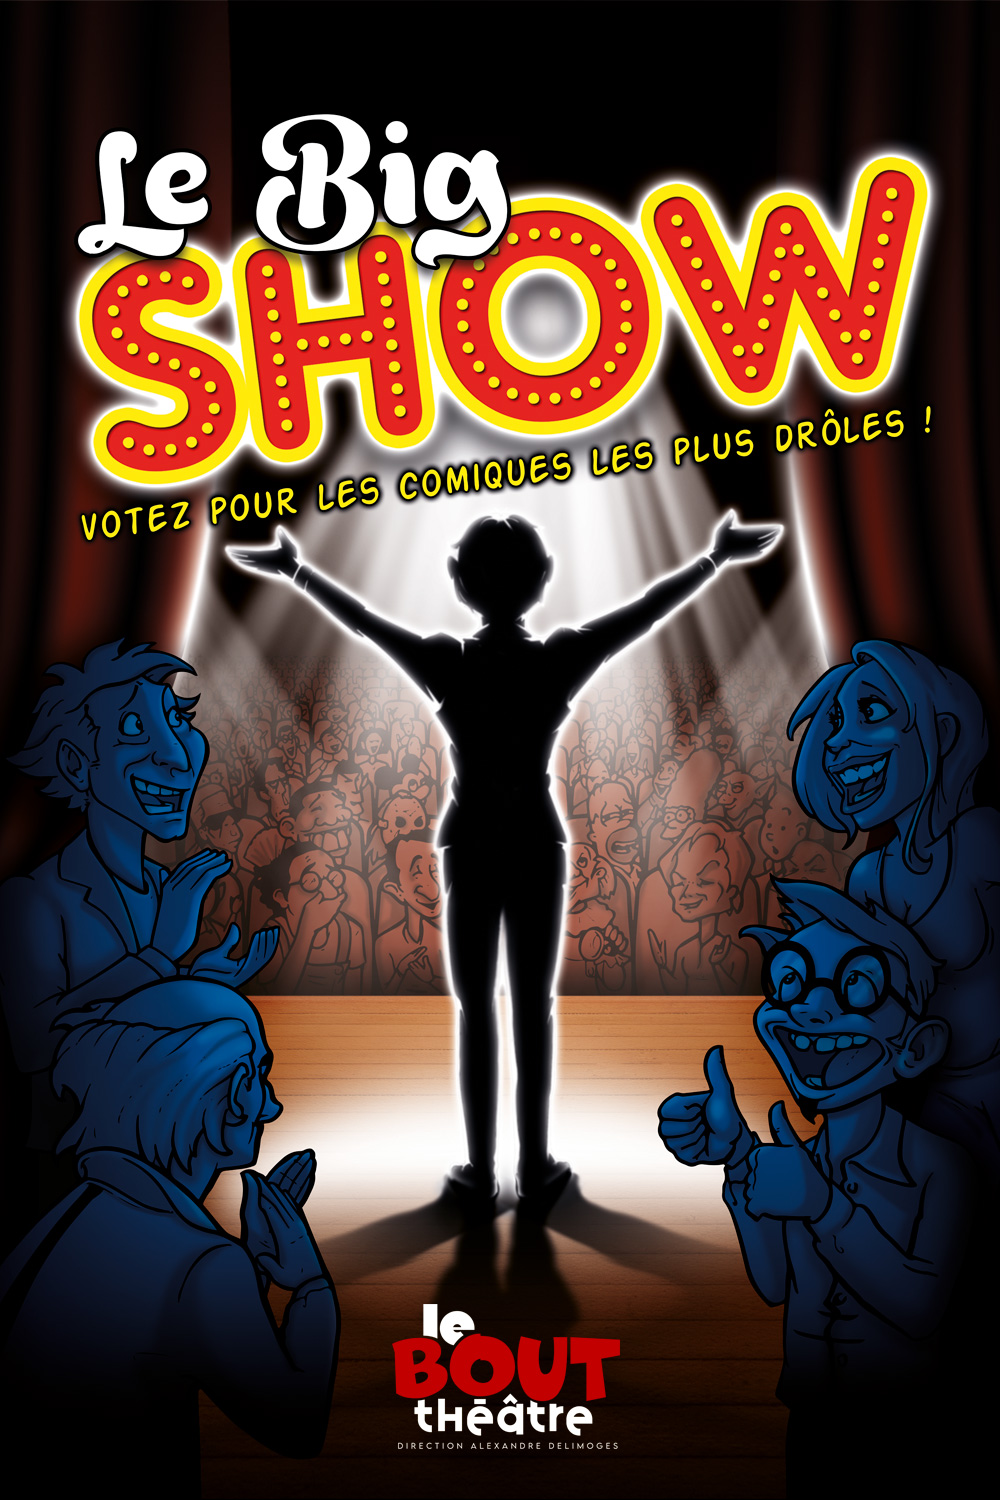 LE BIG SHIOW, Avec les meilleurs humoristes de l'École du One Man Show<br />
Spectacle conçu par Alexandre Delimoges